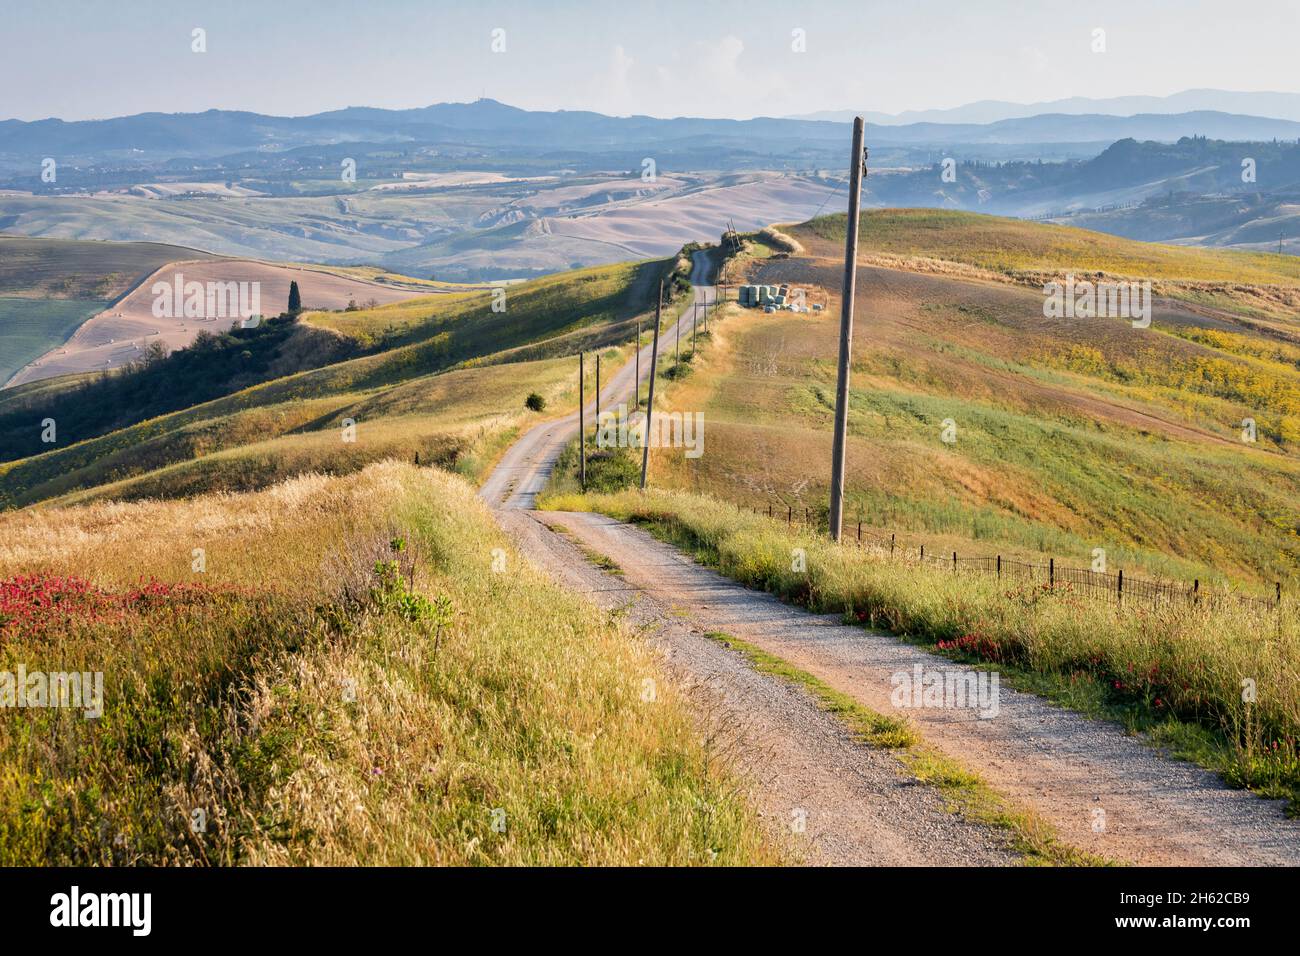 paysage rural toscan, route de campagne dans les collines sienaises, asciano, crete senesi, province de sienne, toscane, italie Banque D'Images